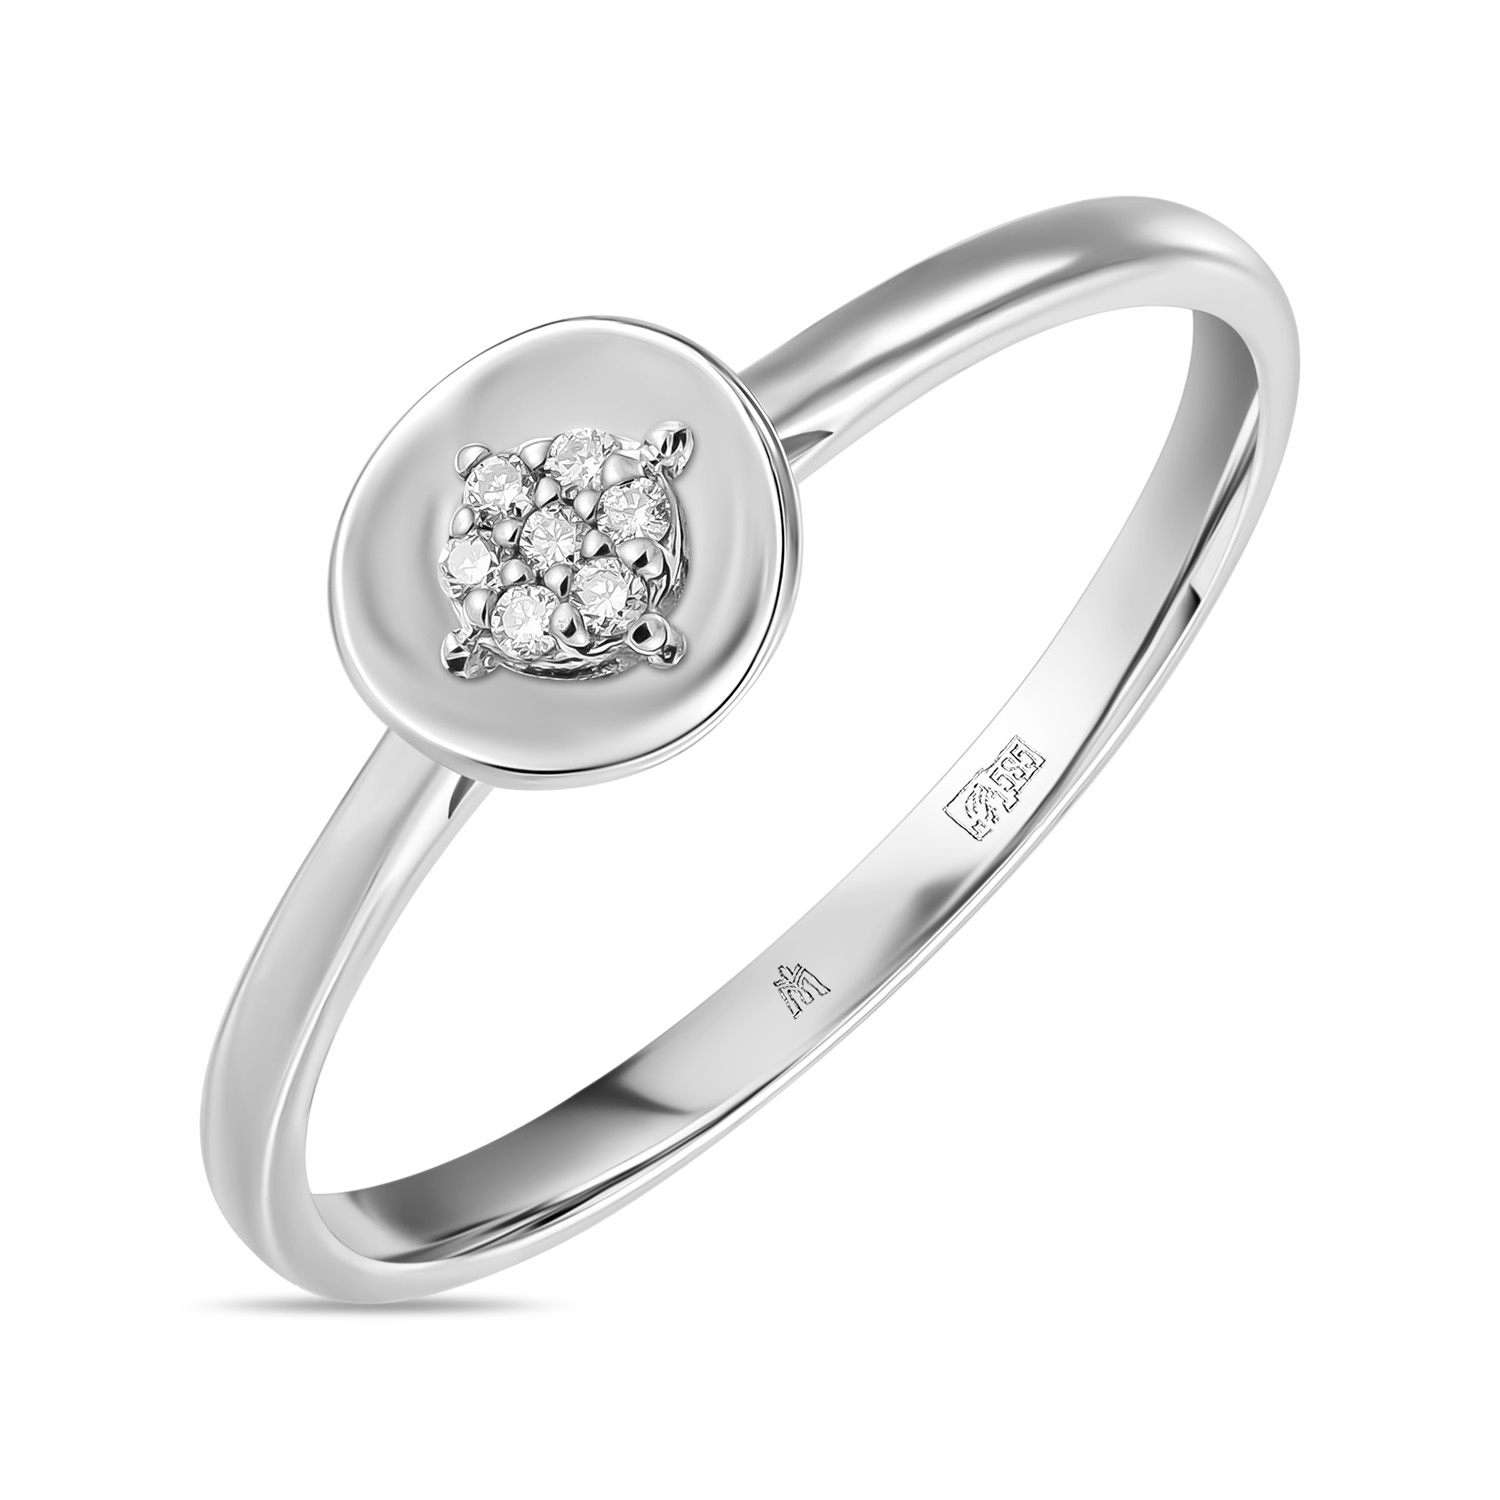 Золотое кольцо c бриллиантами, цвет белый - фото 1